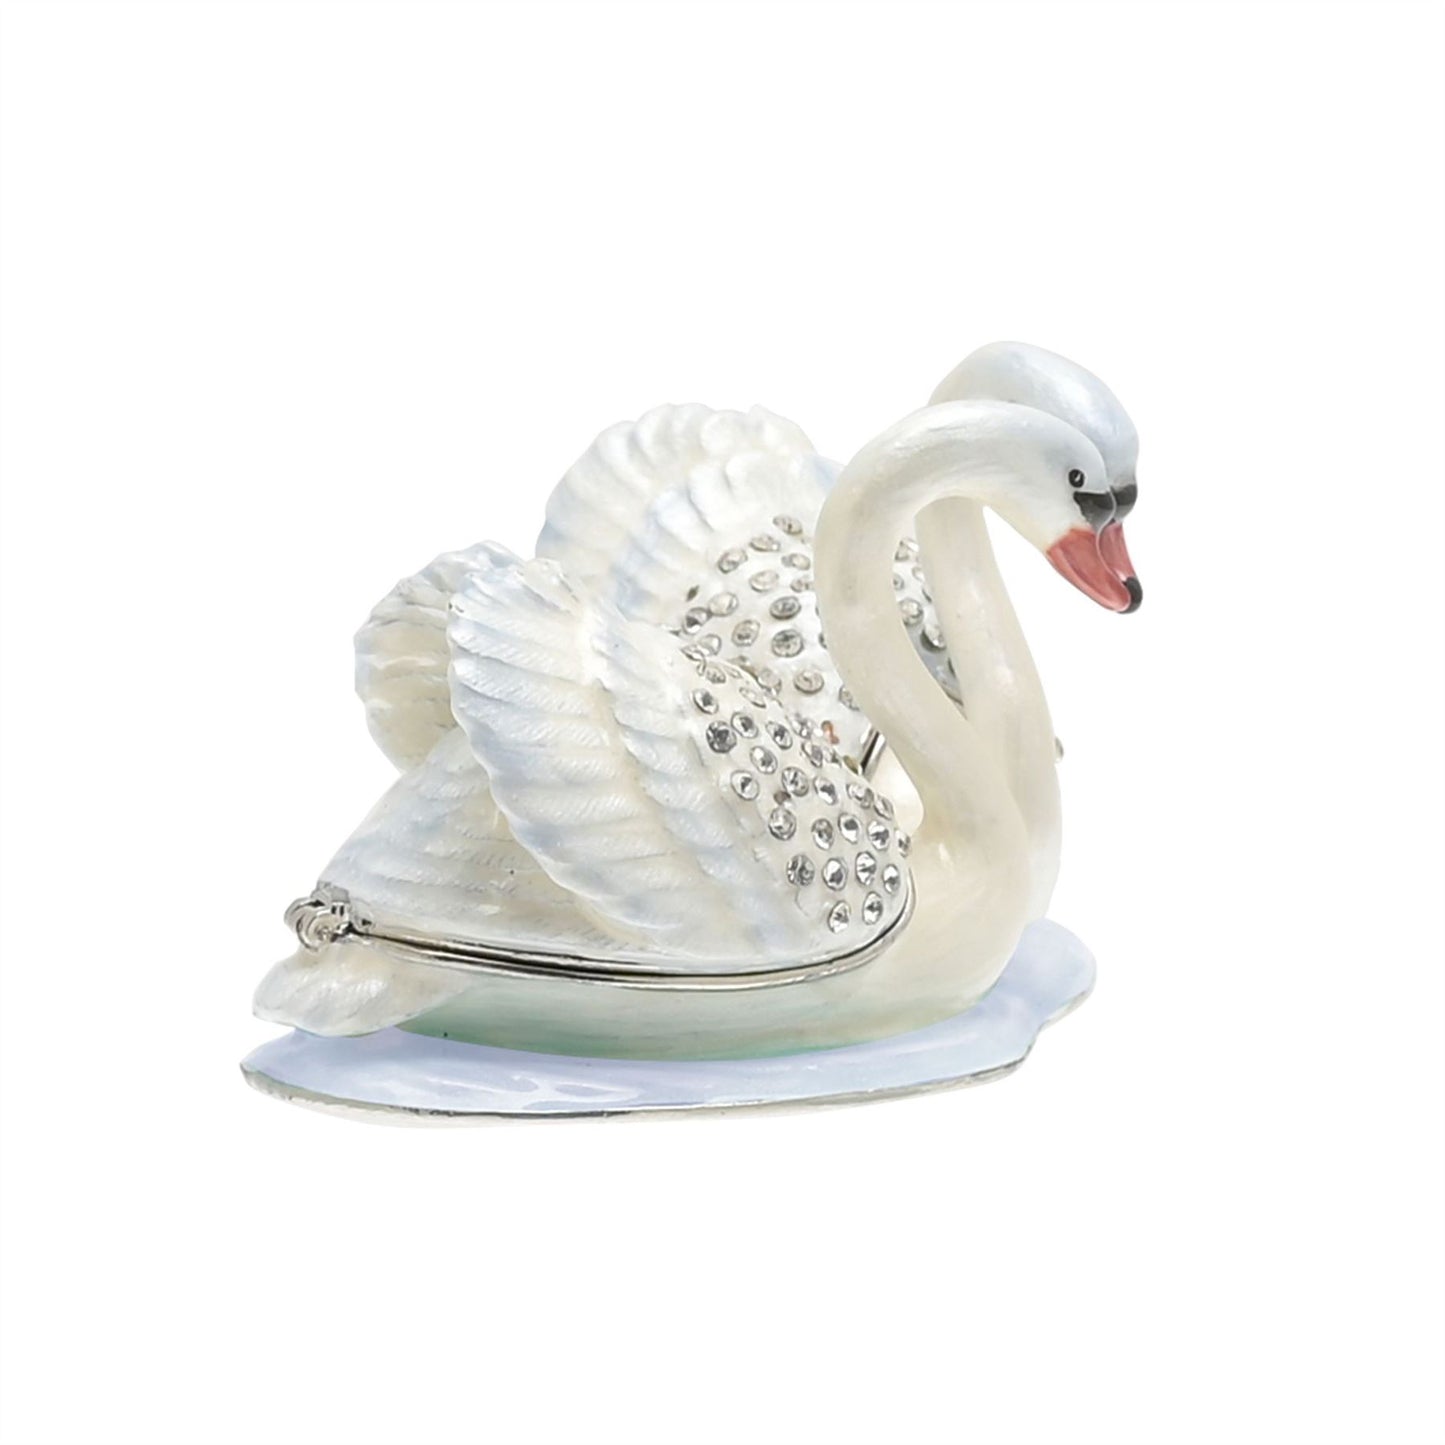 Treasured Trinkets - Pair of Swans